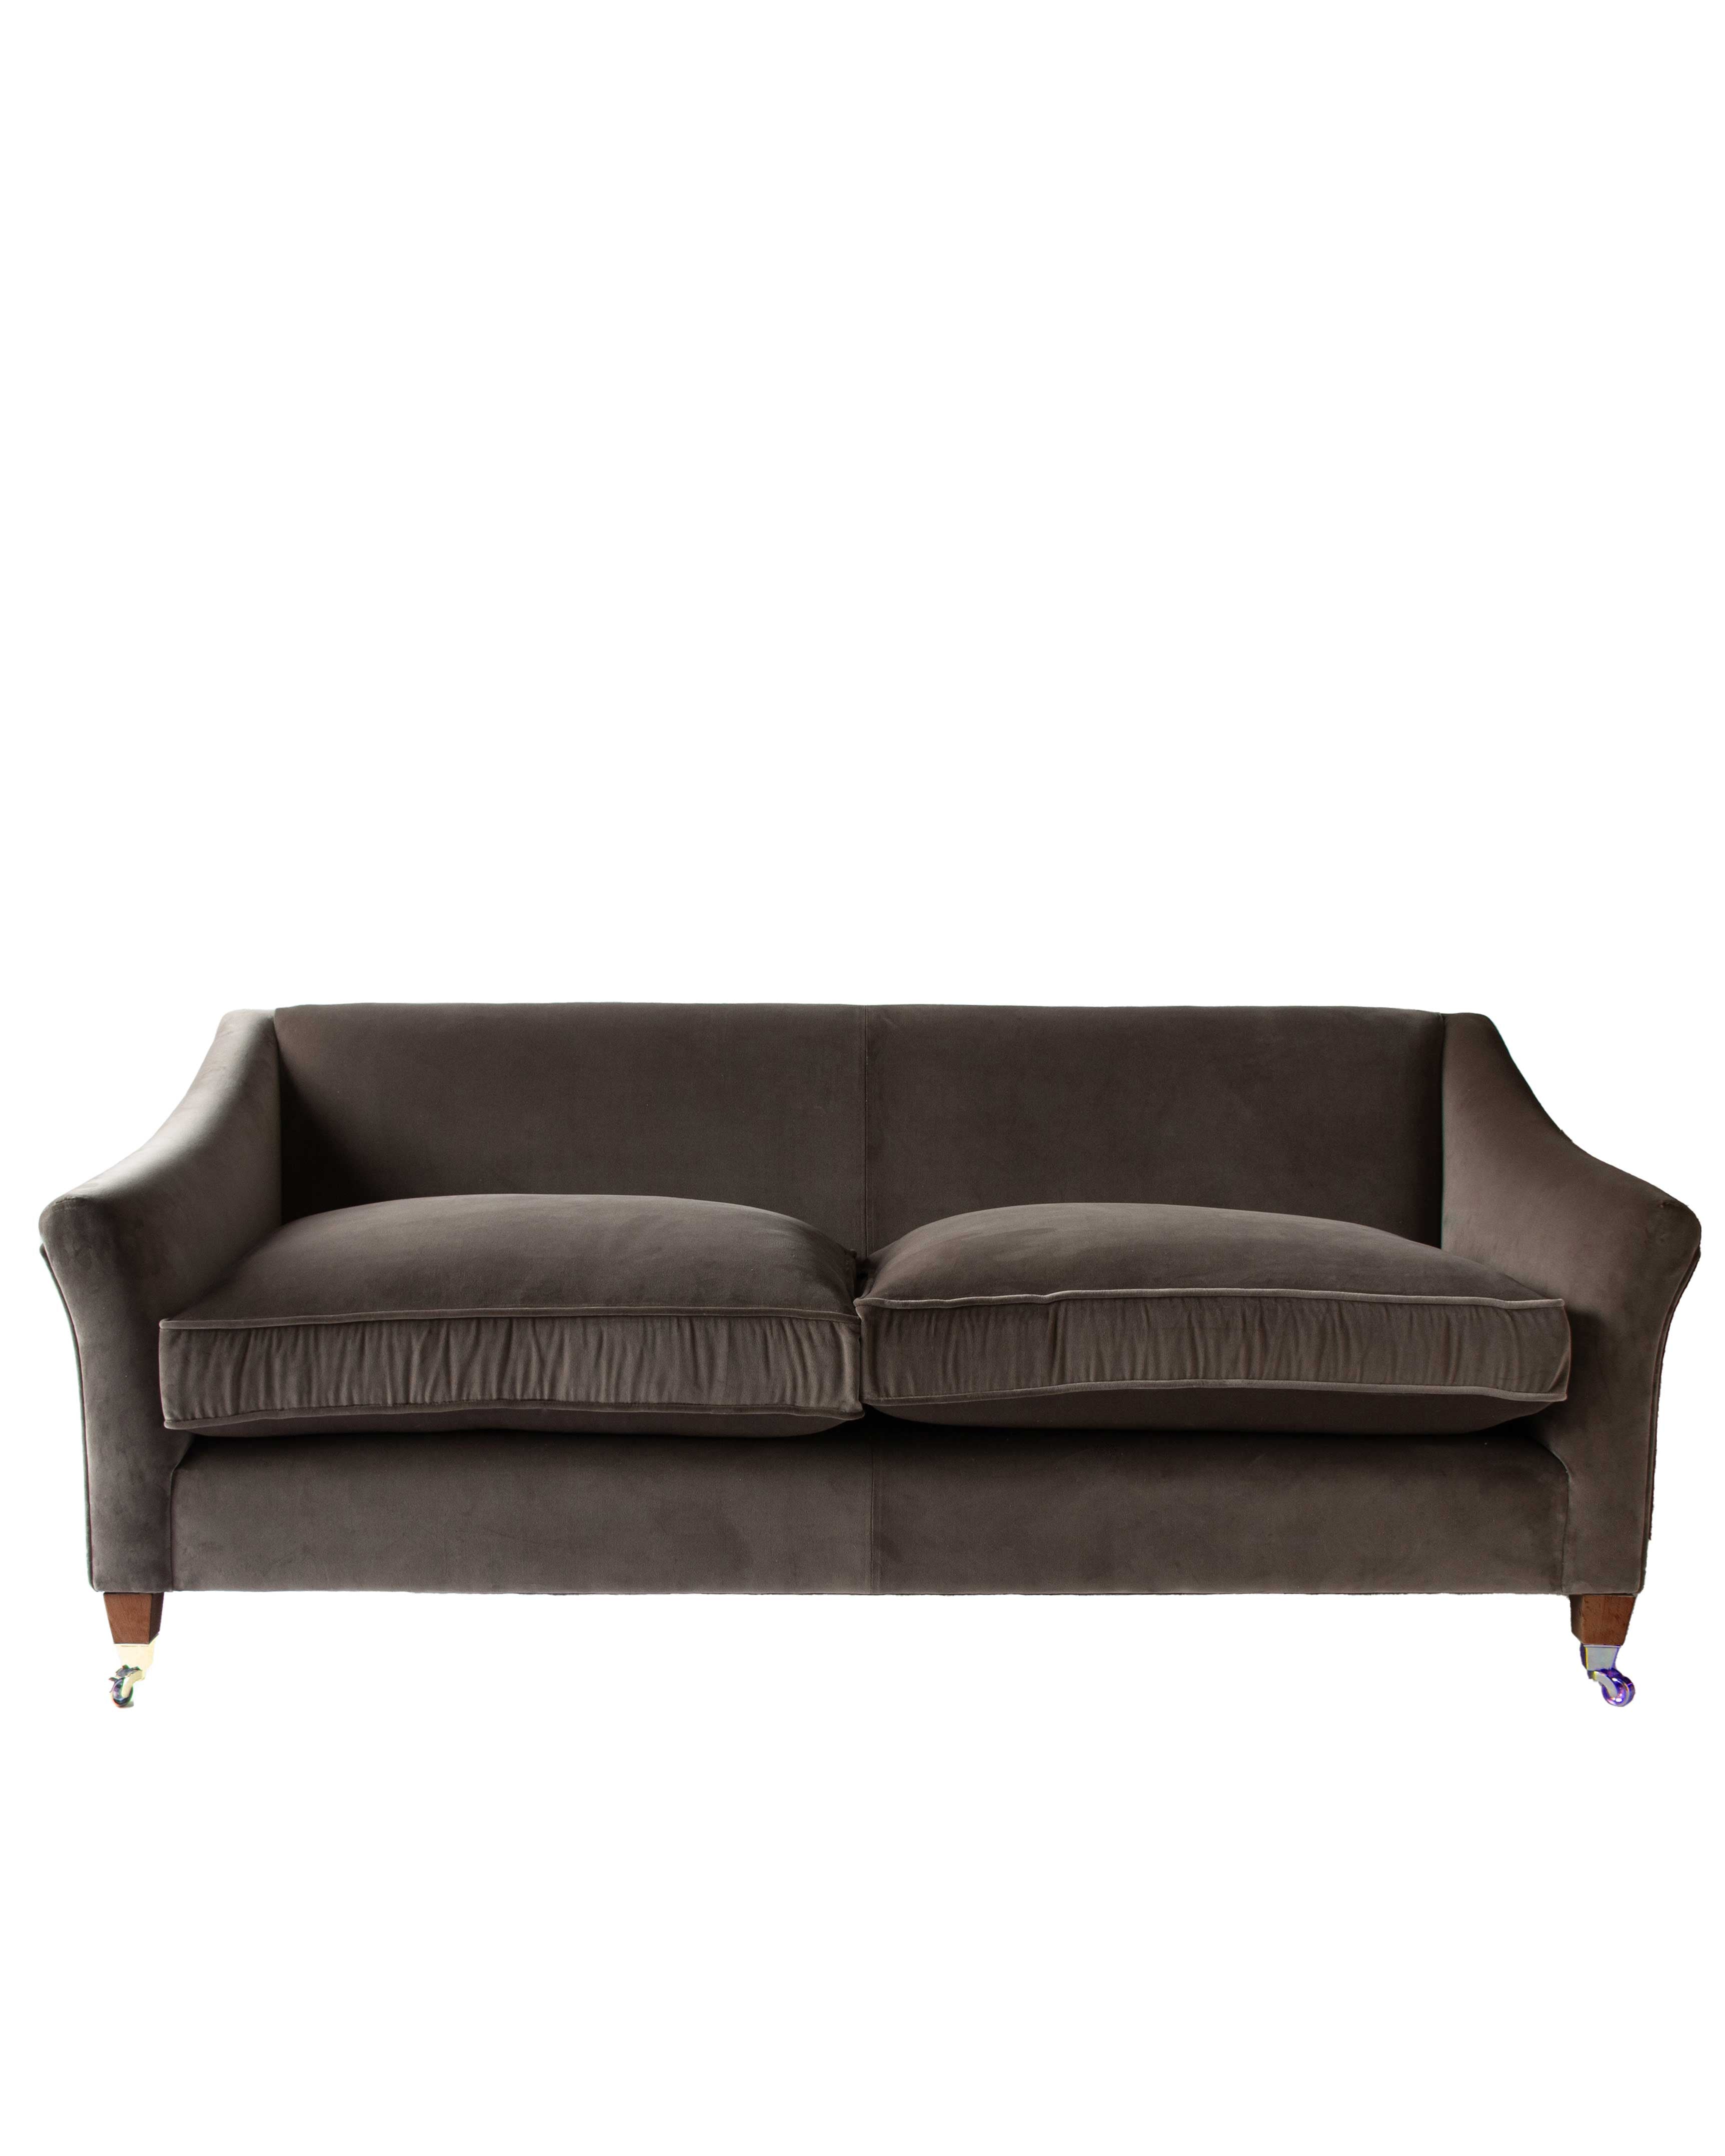 The Clos Luce Sofa